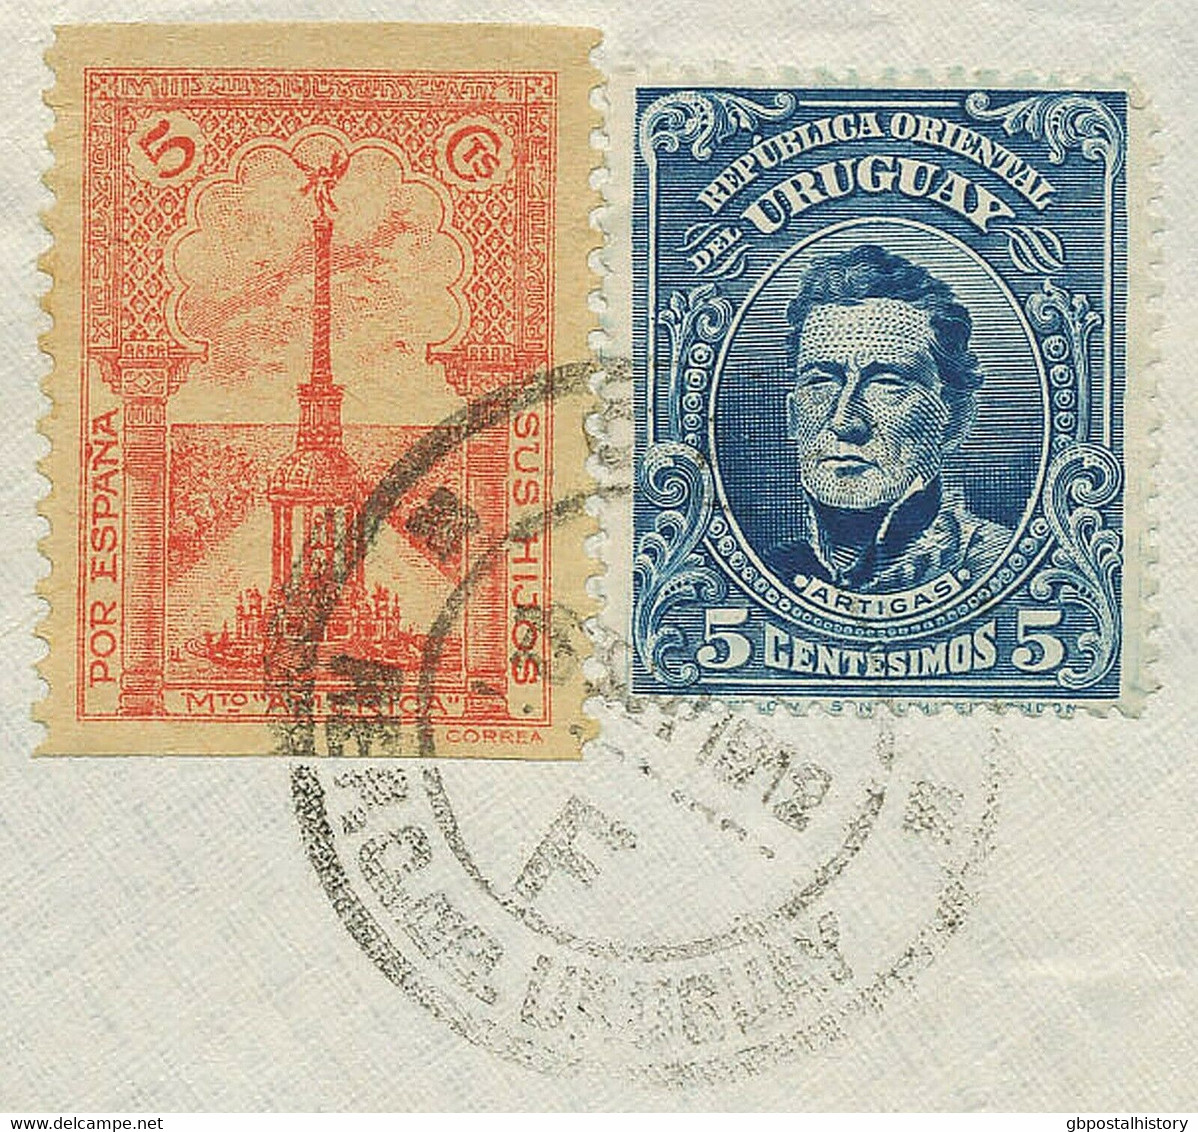 URUGUAY 1912 5 C Artigas + Propaganda Stamp 5 C Red "POR ESPANA" To ARGENTINA - Uruguay